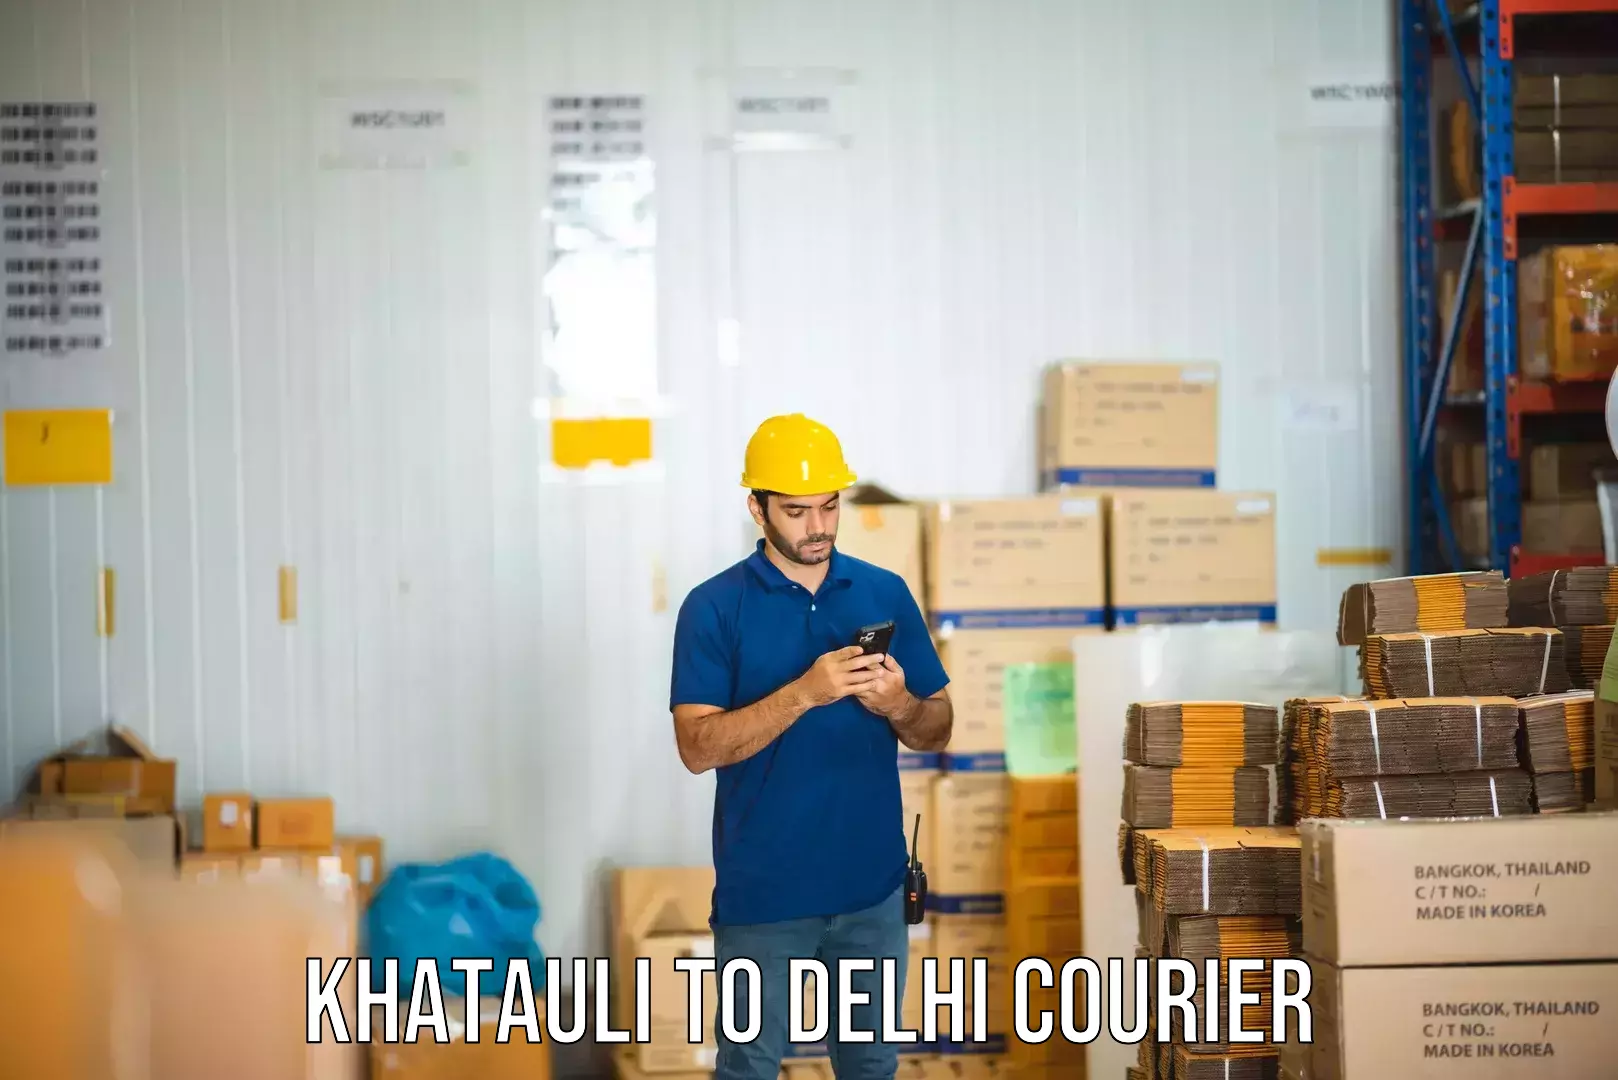 Ocean freight courier Khatauli to Delhi